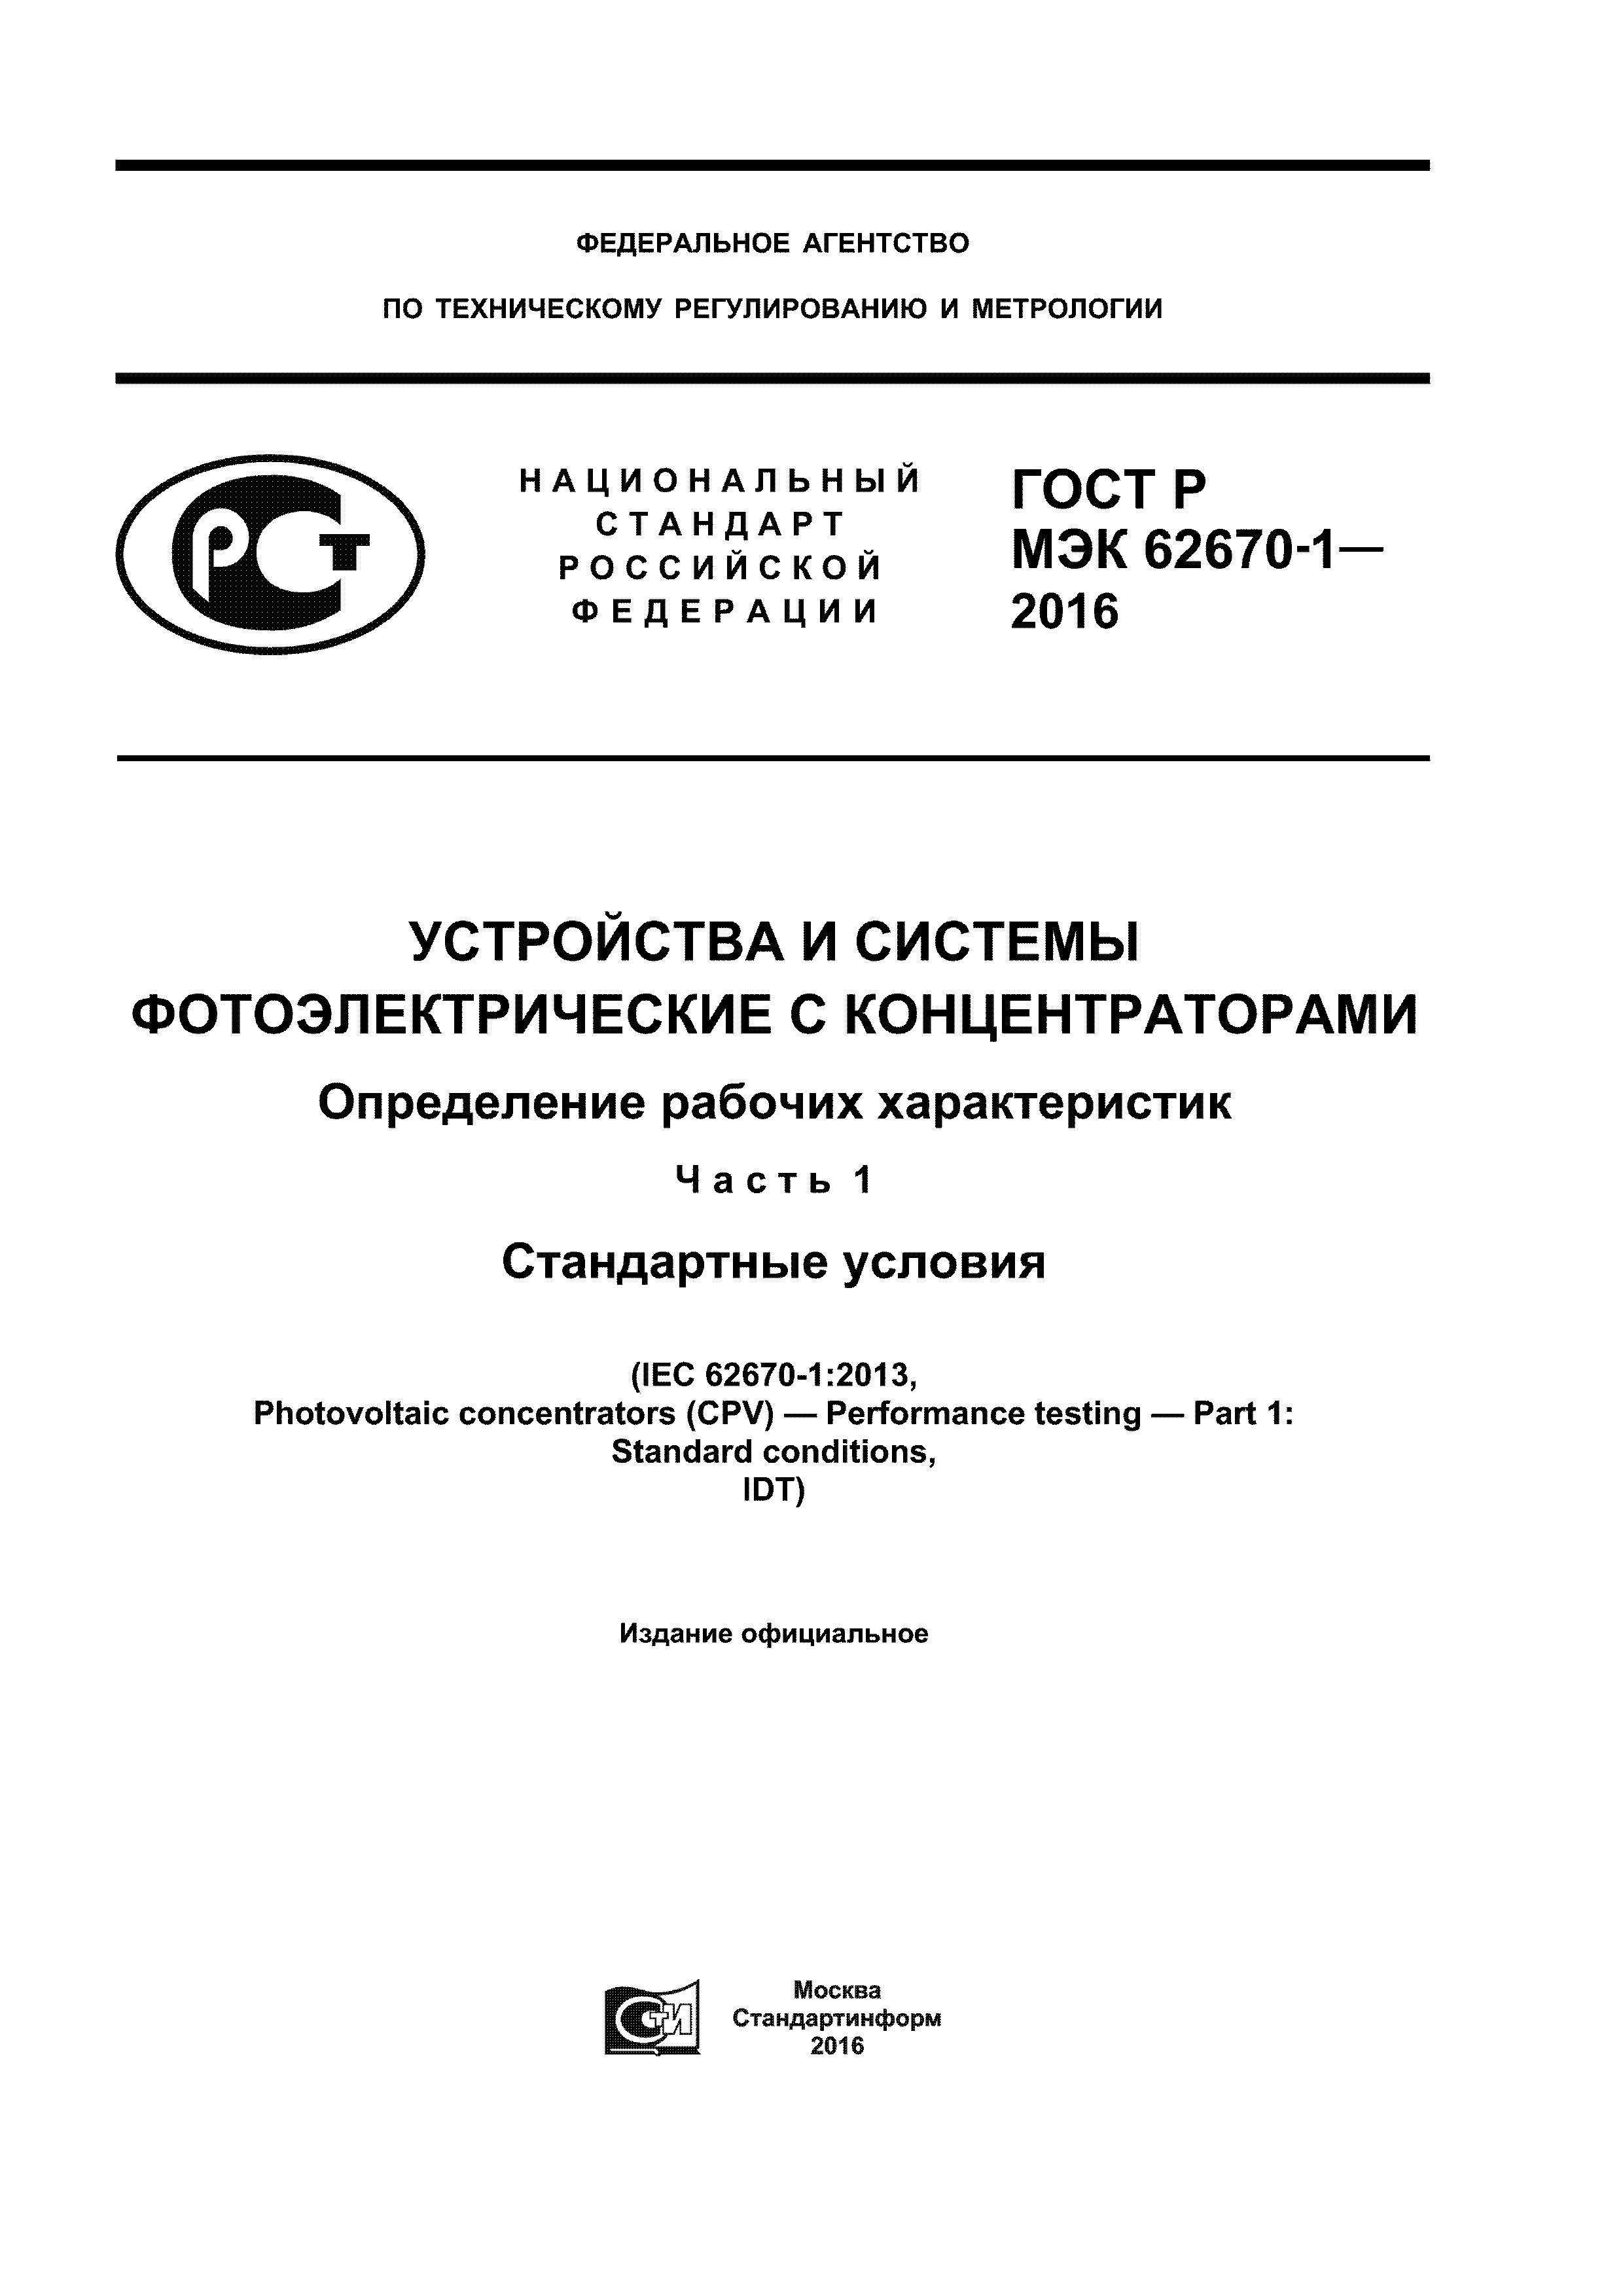 ГОСТ Р МЭК 62670-1-2016